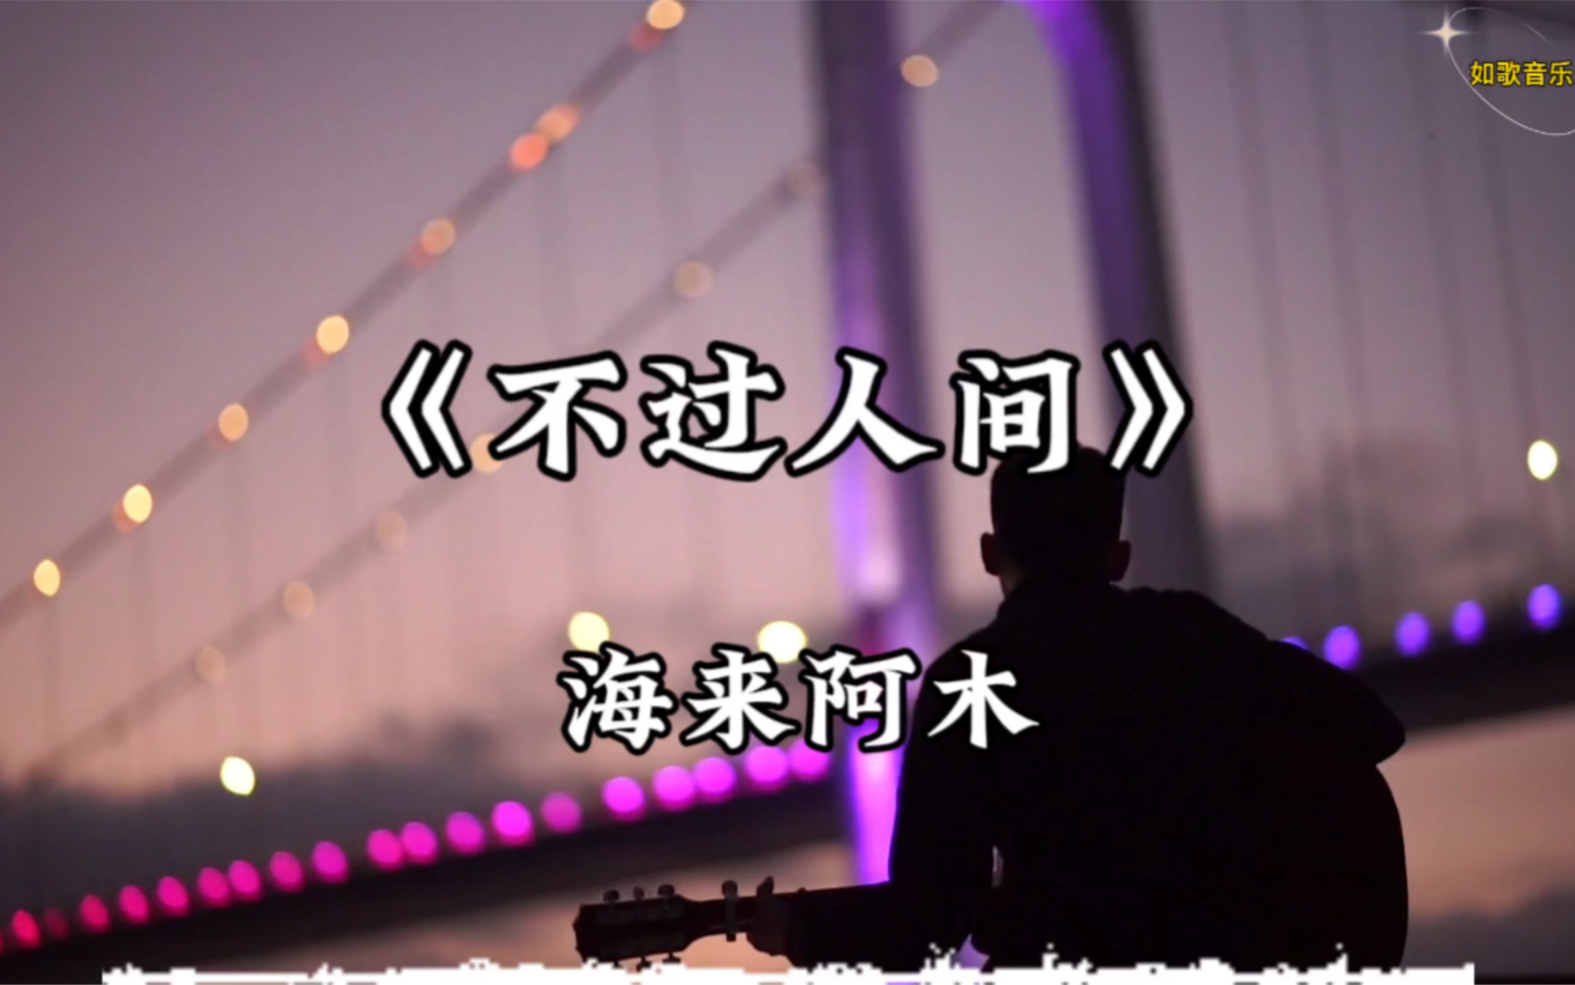 ‎五十年以后 - Single by 海来阿木 on Apple Music